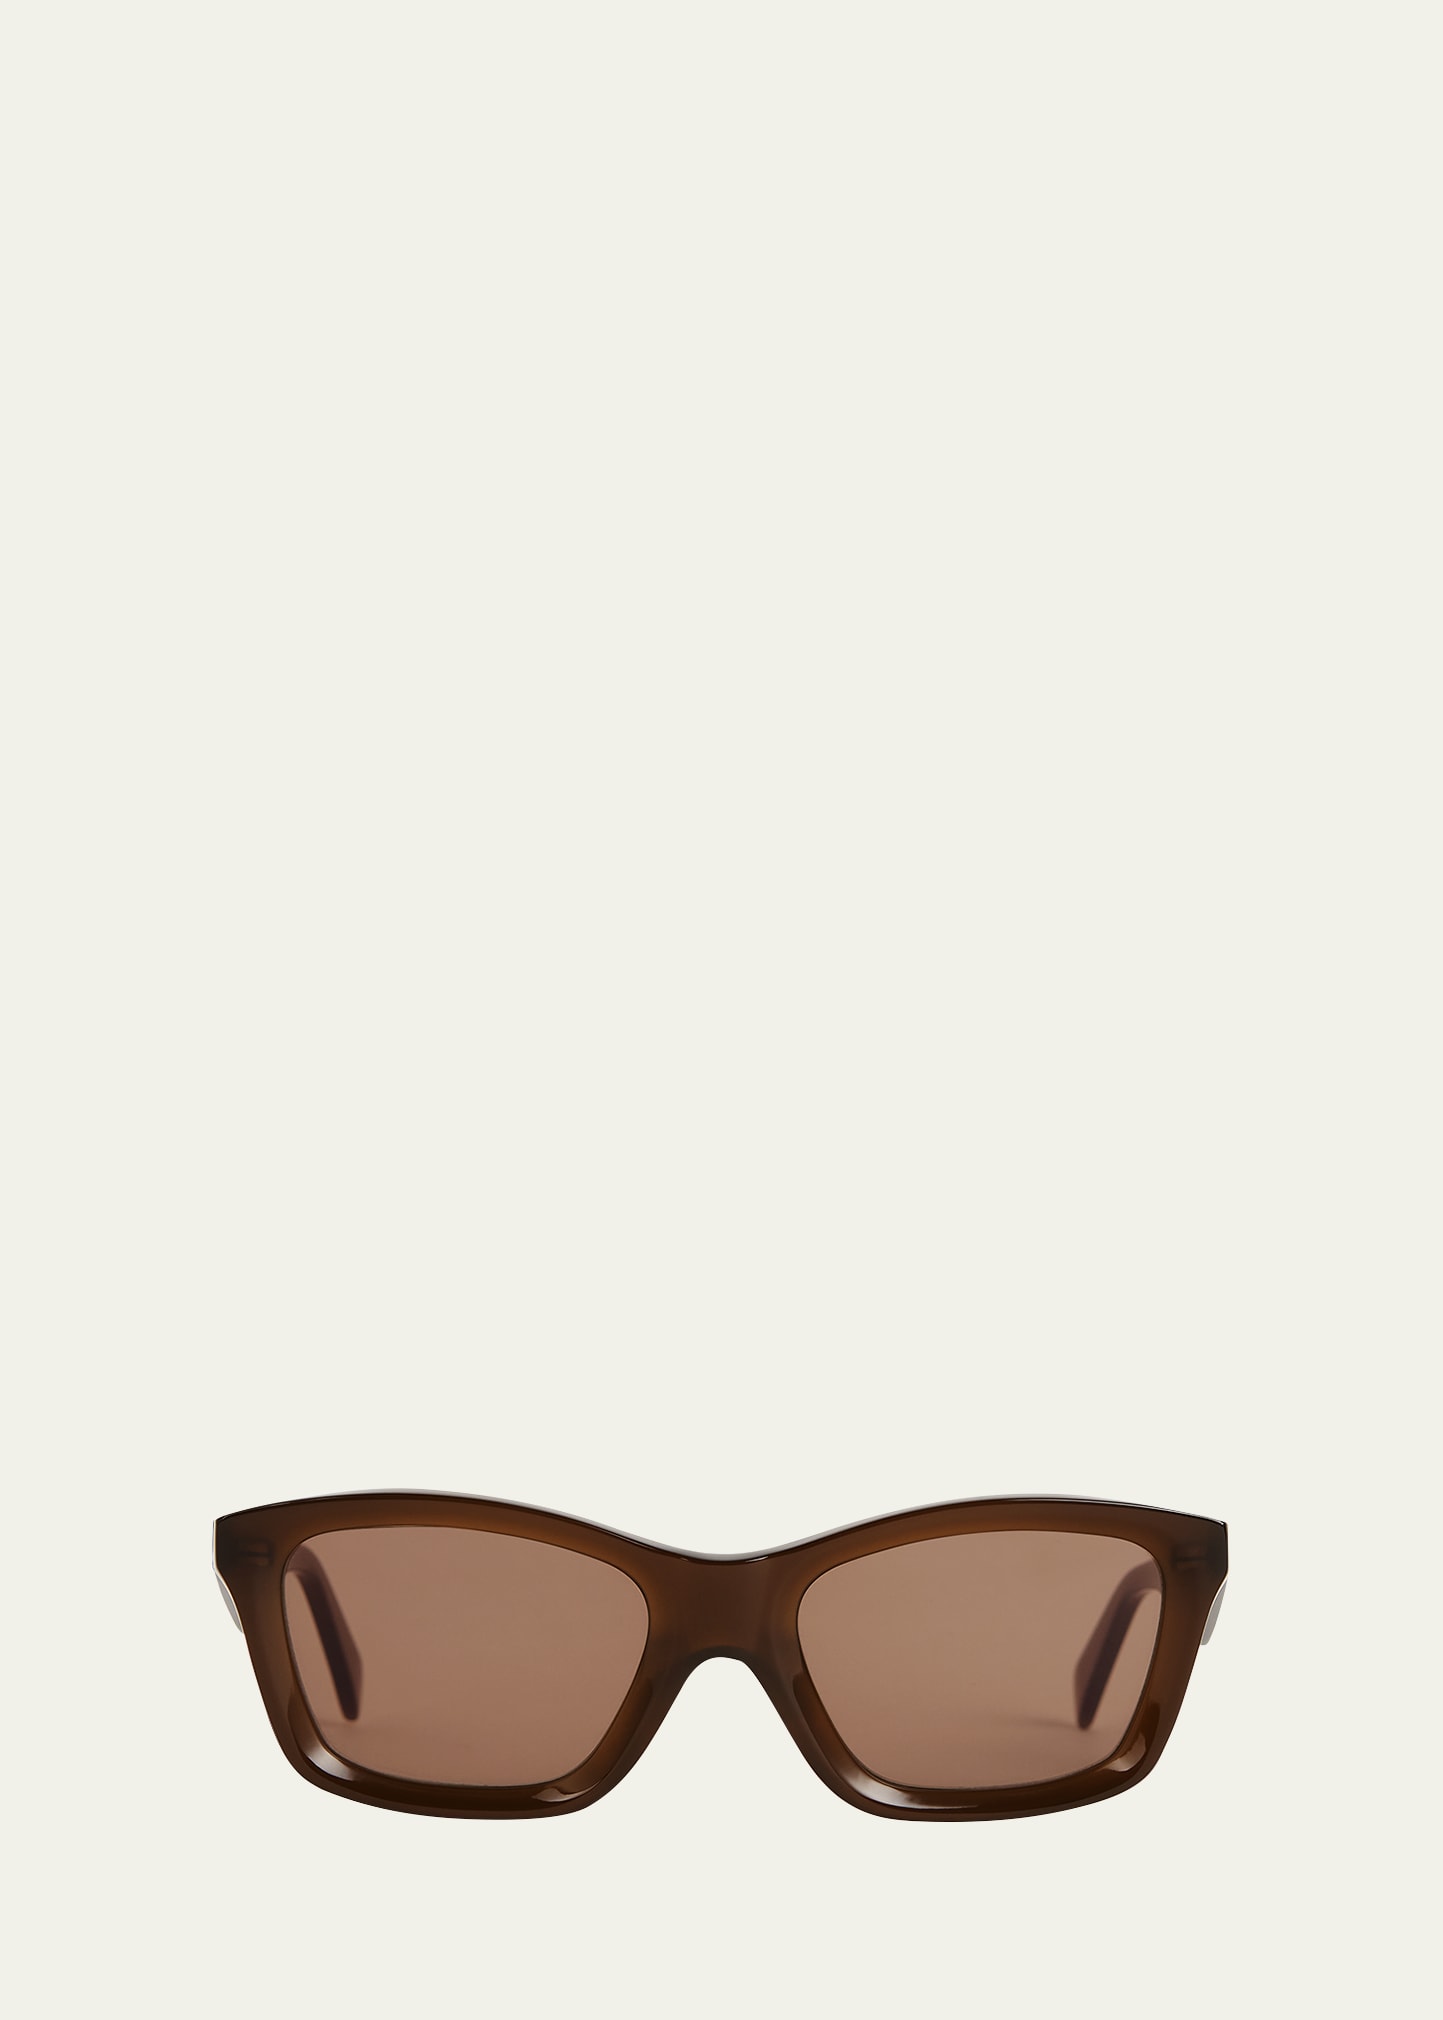 The Classic Acetate Square Sunglasses